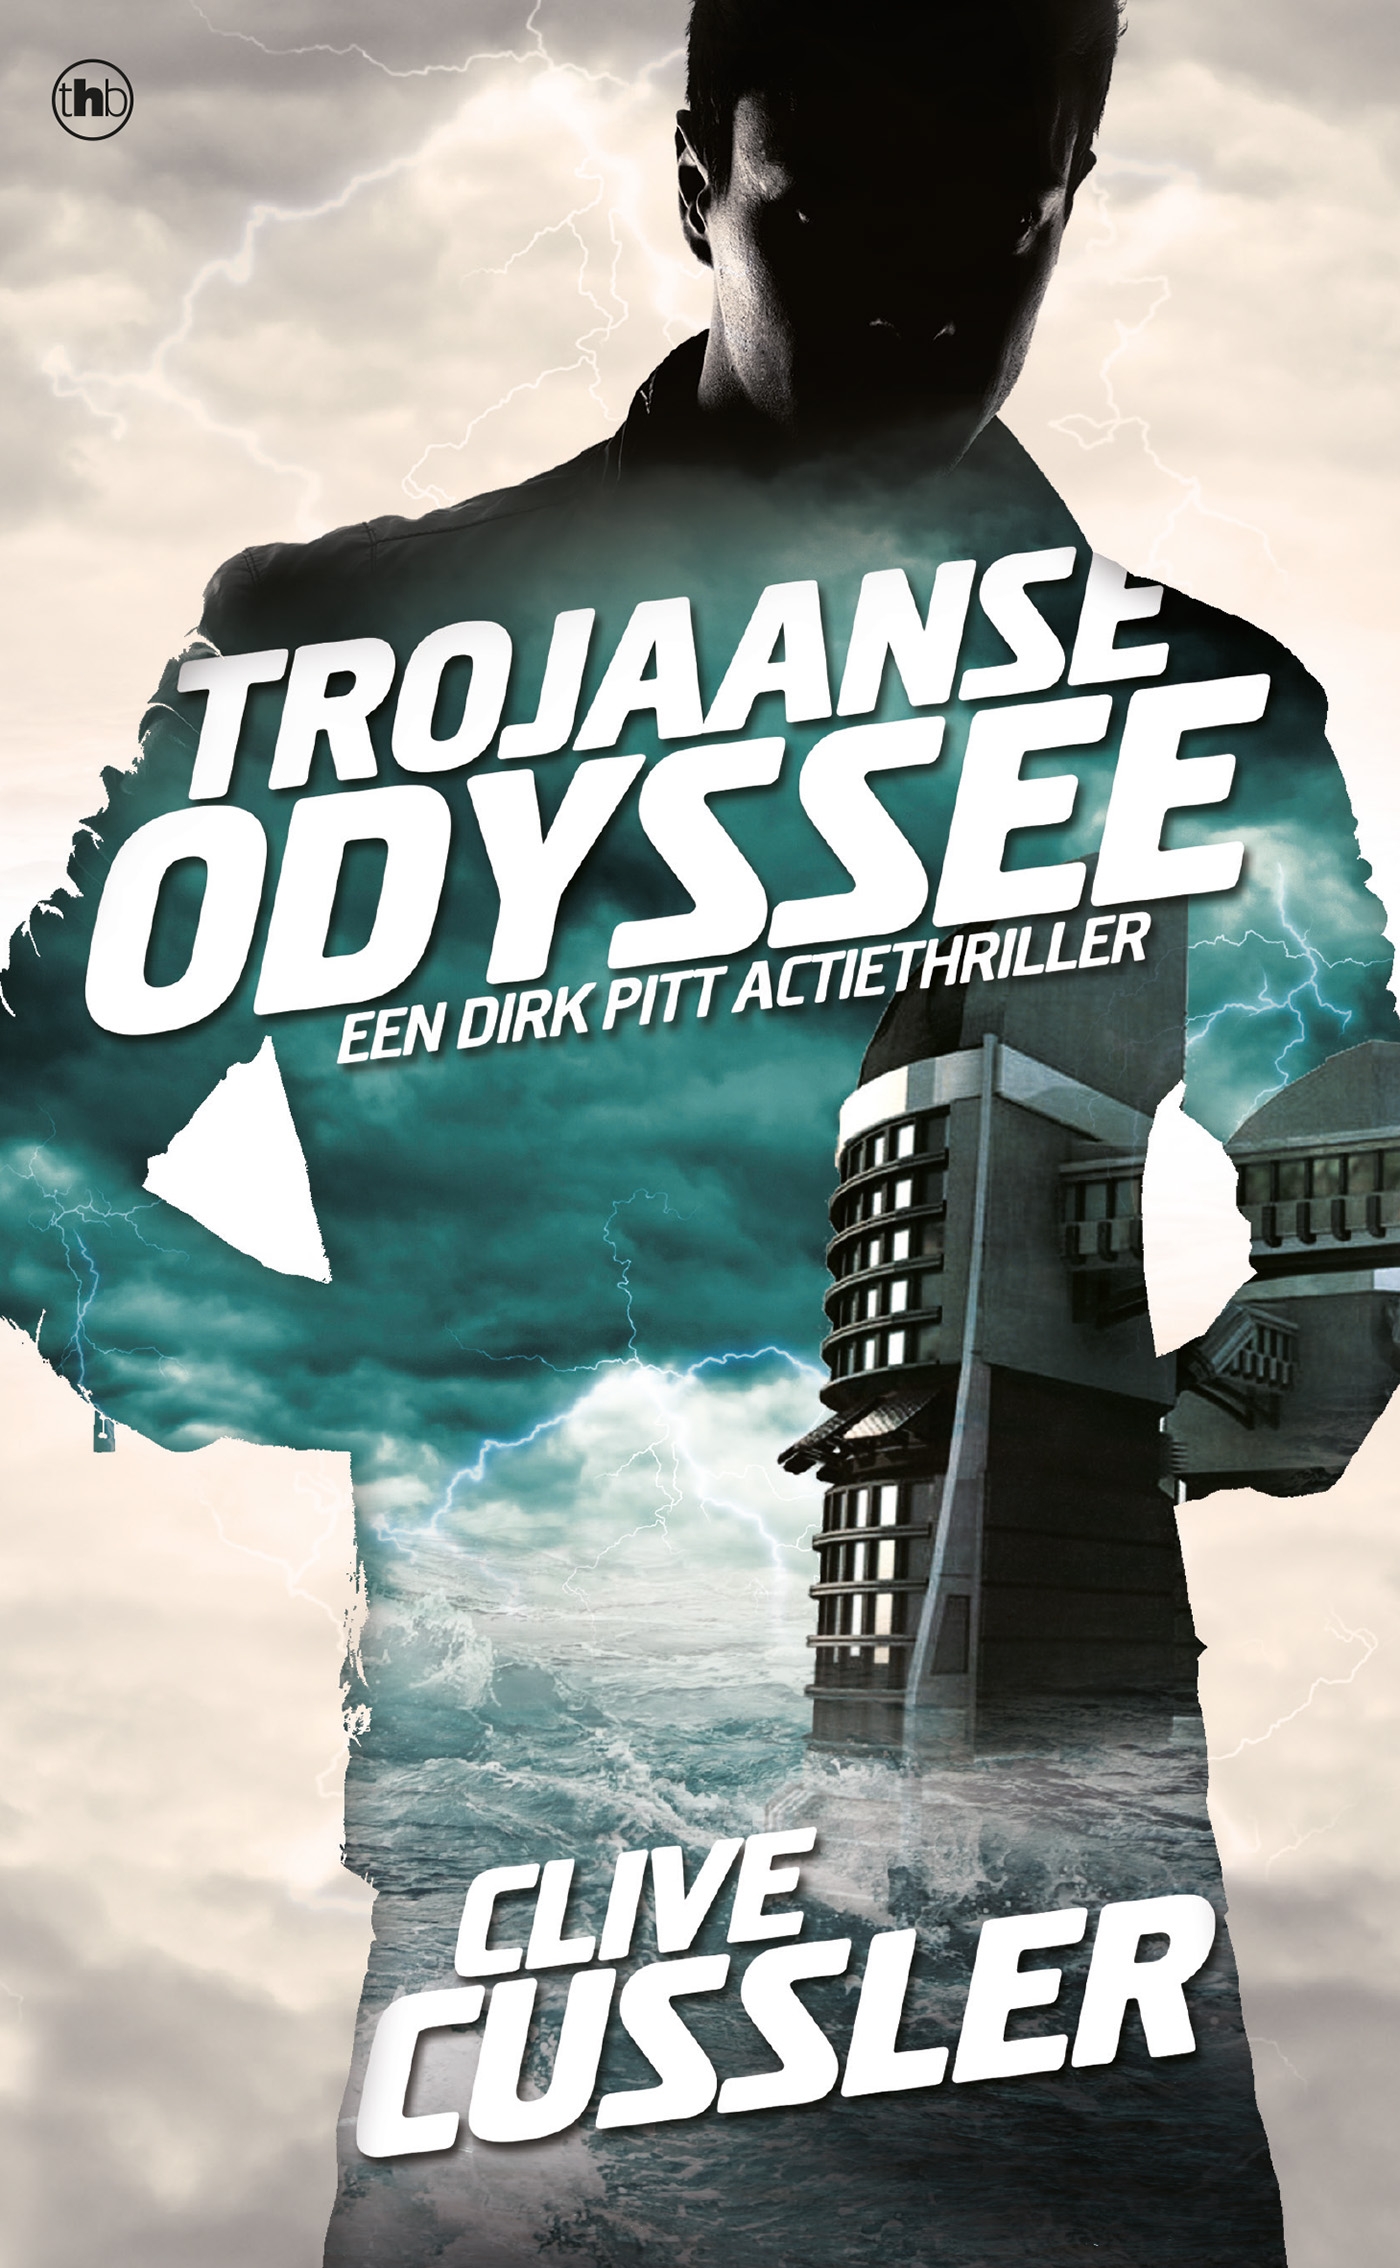 Trojaanse Odyssee (Ebook)